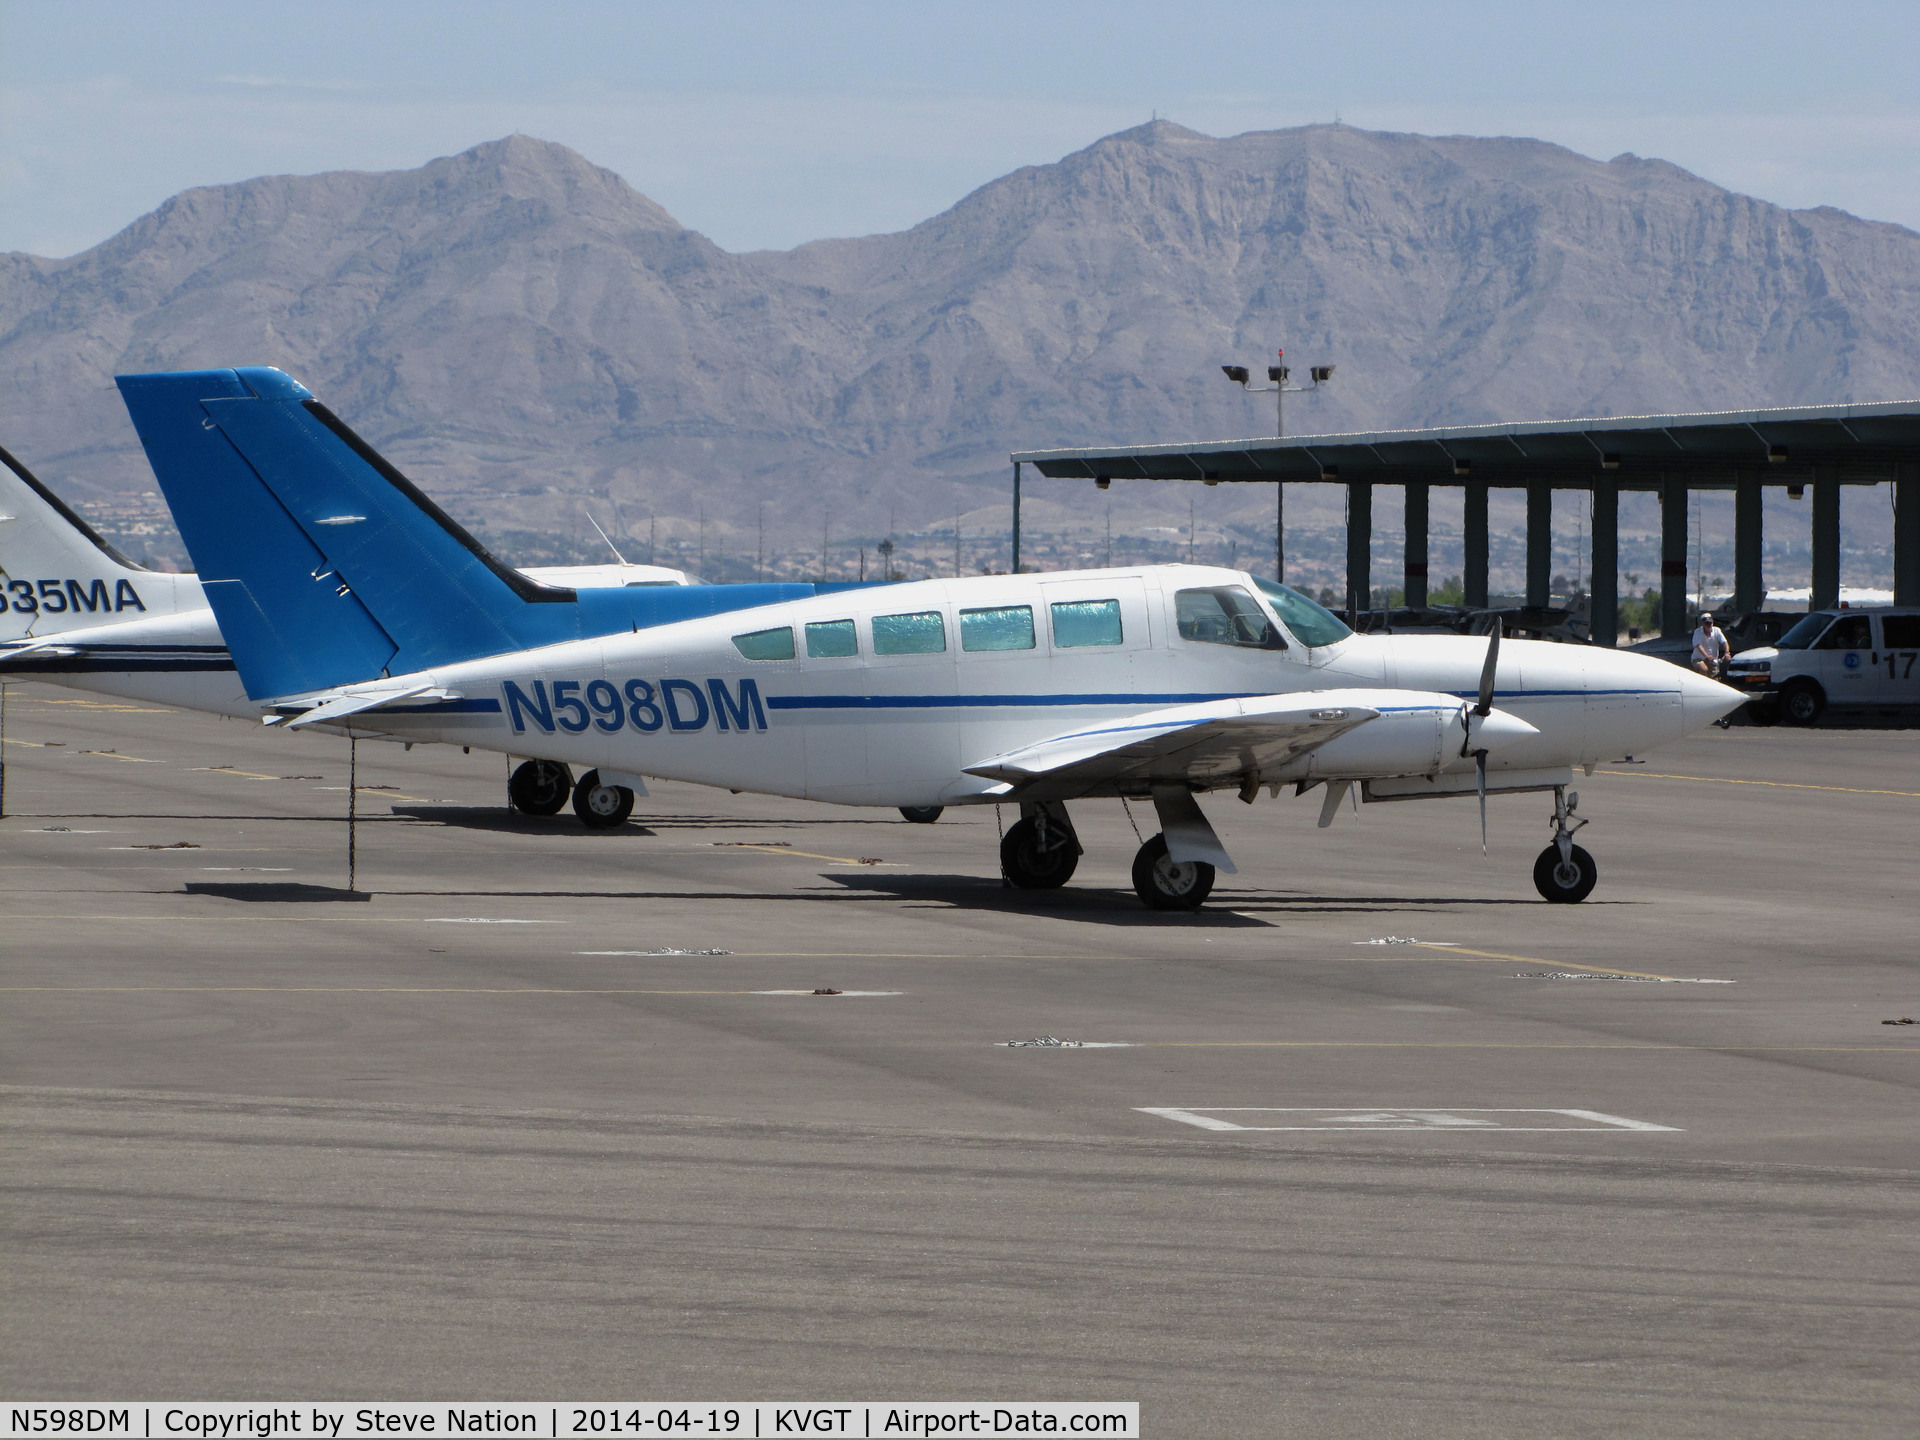 N598DM, 1979 Cessna 402C C/N 402C0114, SAG Inc. (Albuquerque, NM) 1979 Cessna 402C visiting @ North Las Vegas Airport, NV